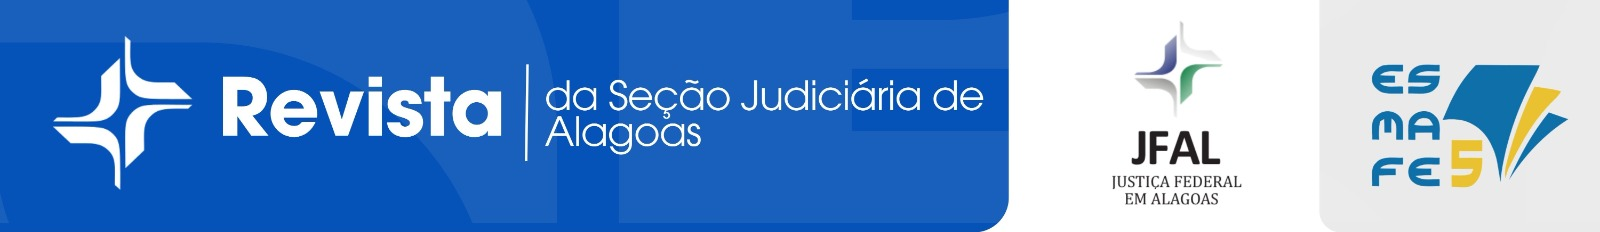 Revista Jurídica da Seção Judiciária de Alagoas